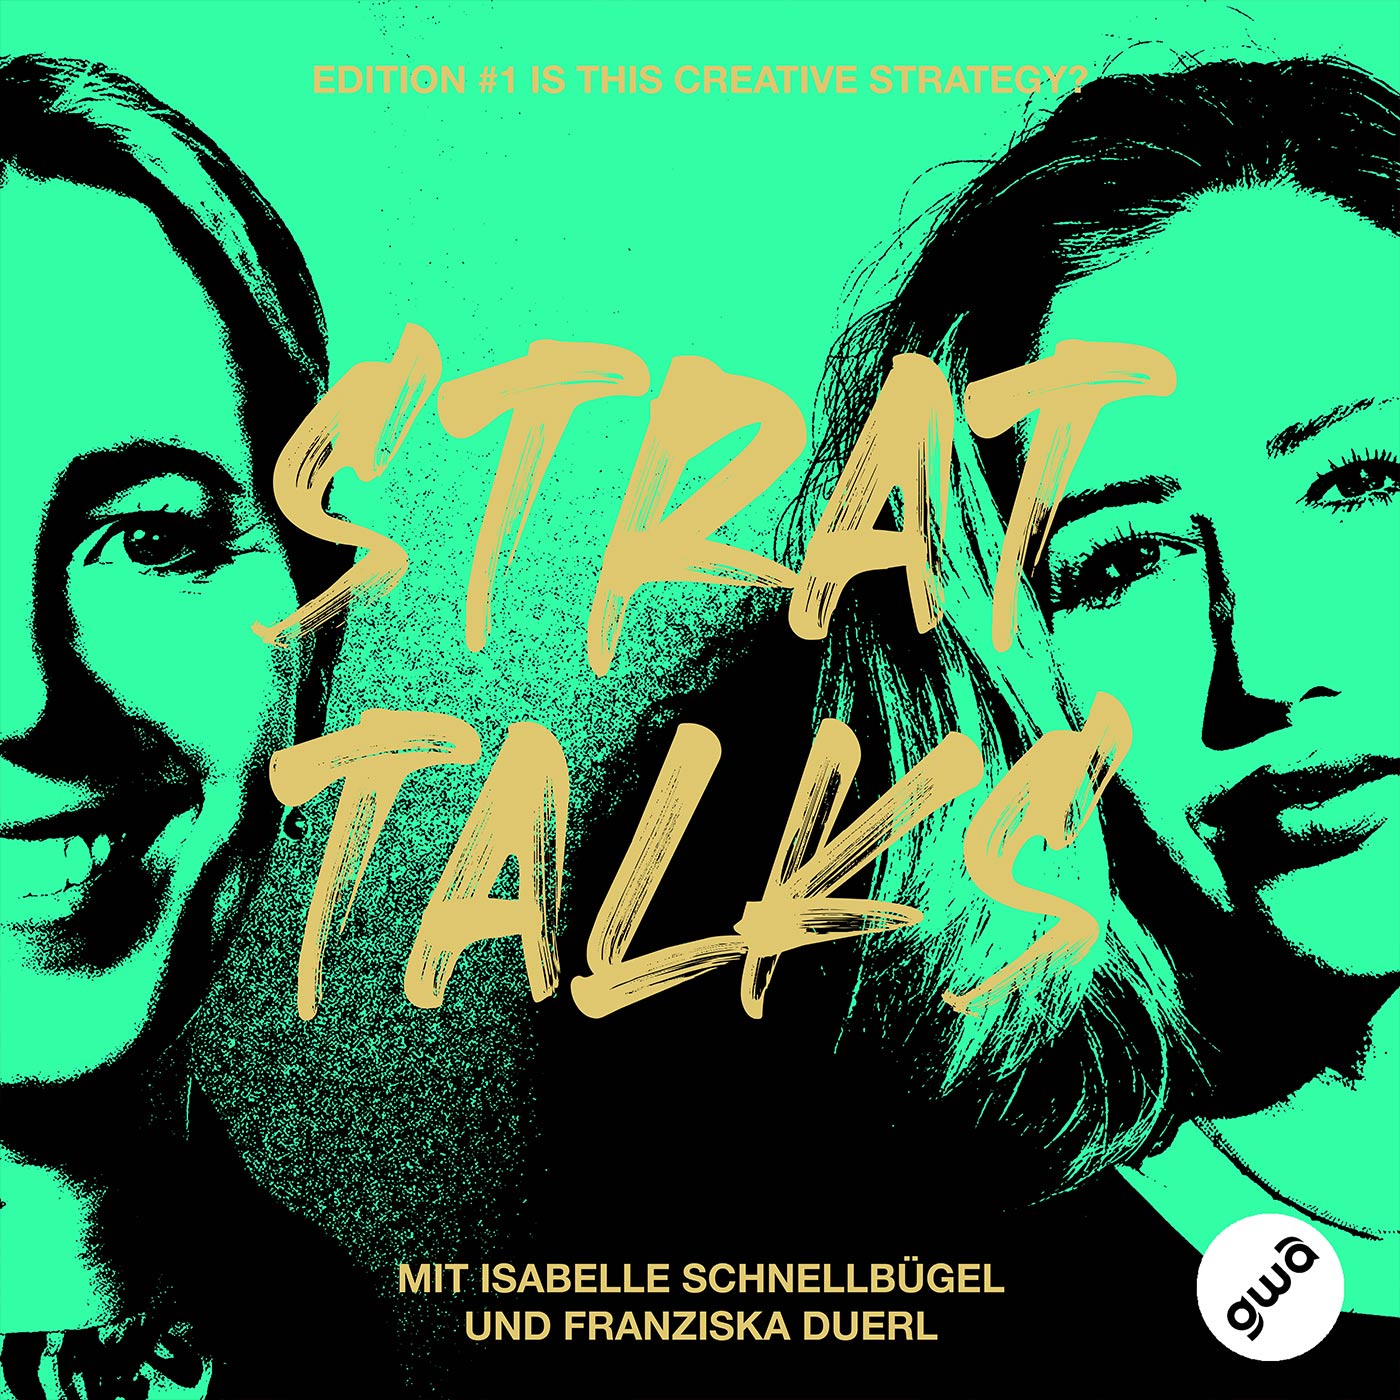 #1/1 Franziska Duerl & Isabelle Schnellbügel - Creative Strategy ist schon ein geiles Berufsfeld!